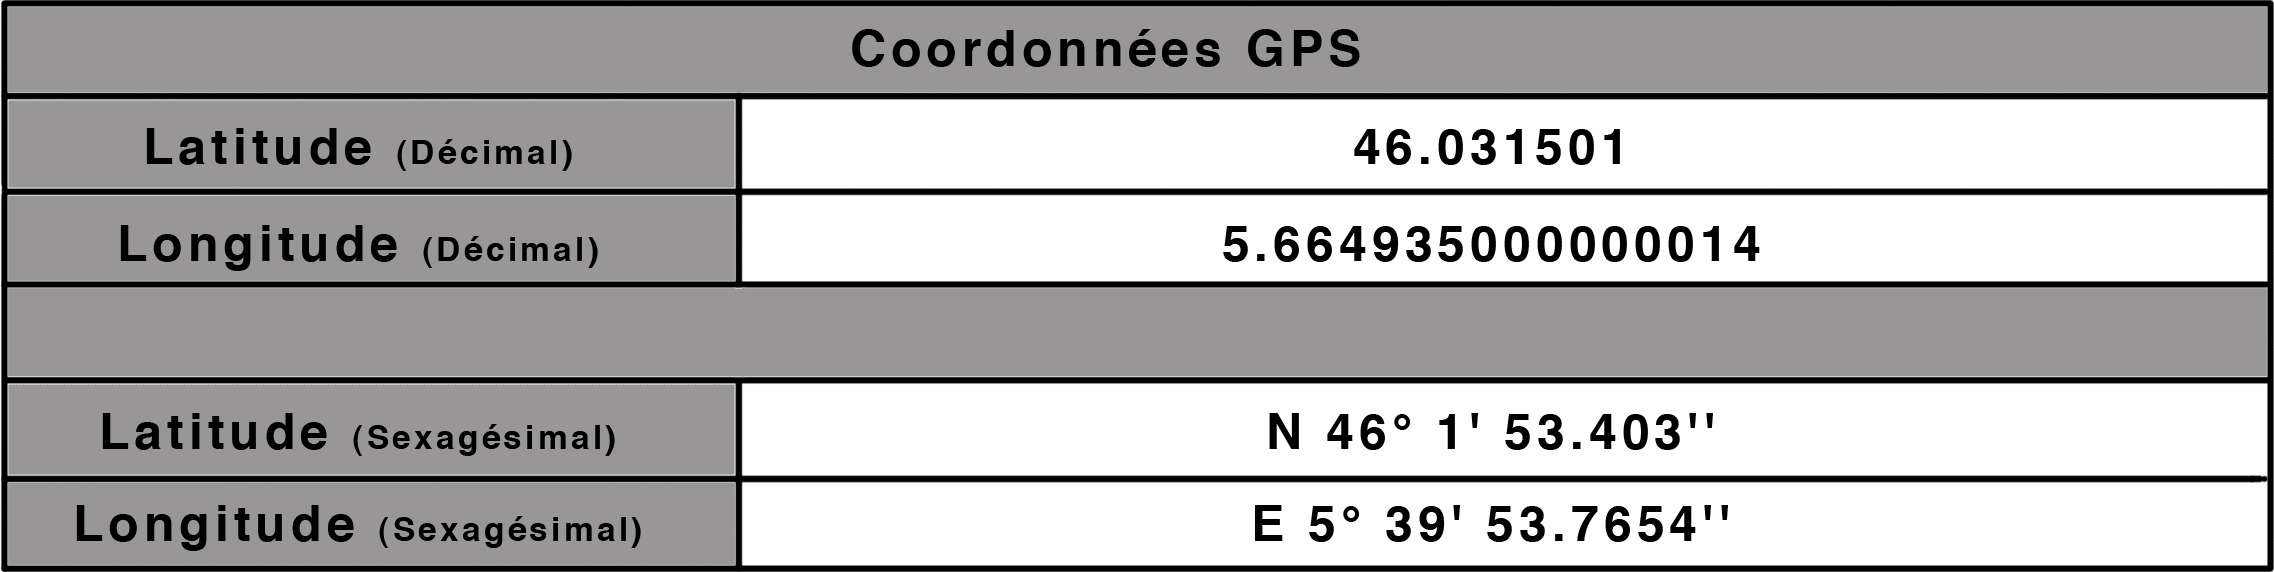 Coordonnée-GPS